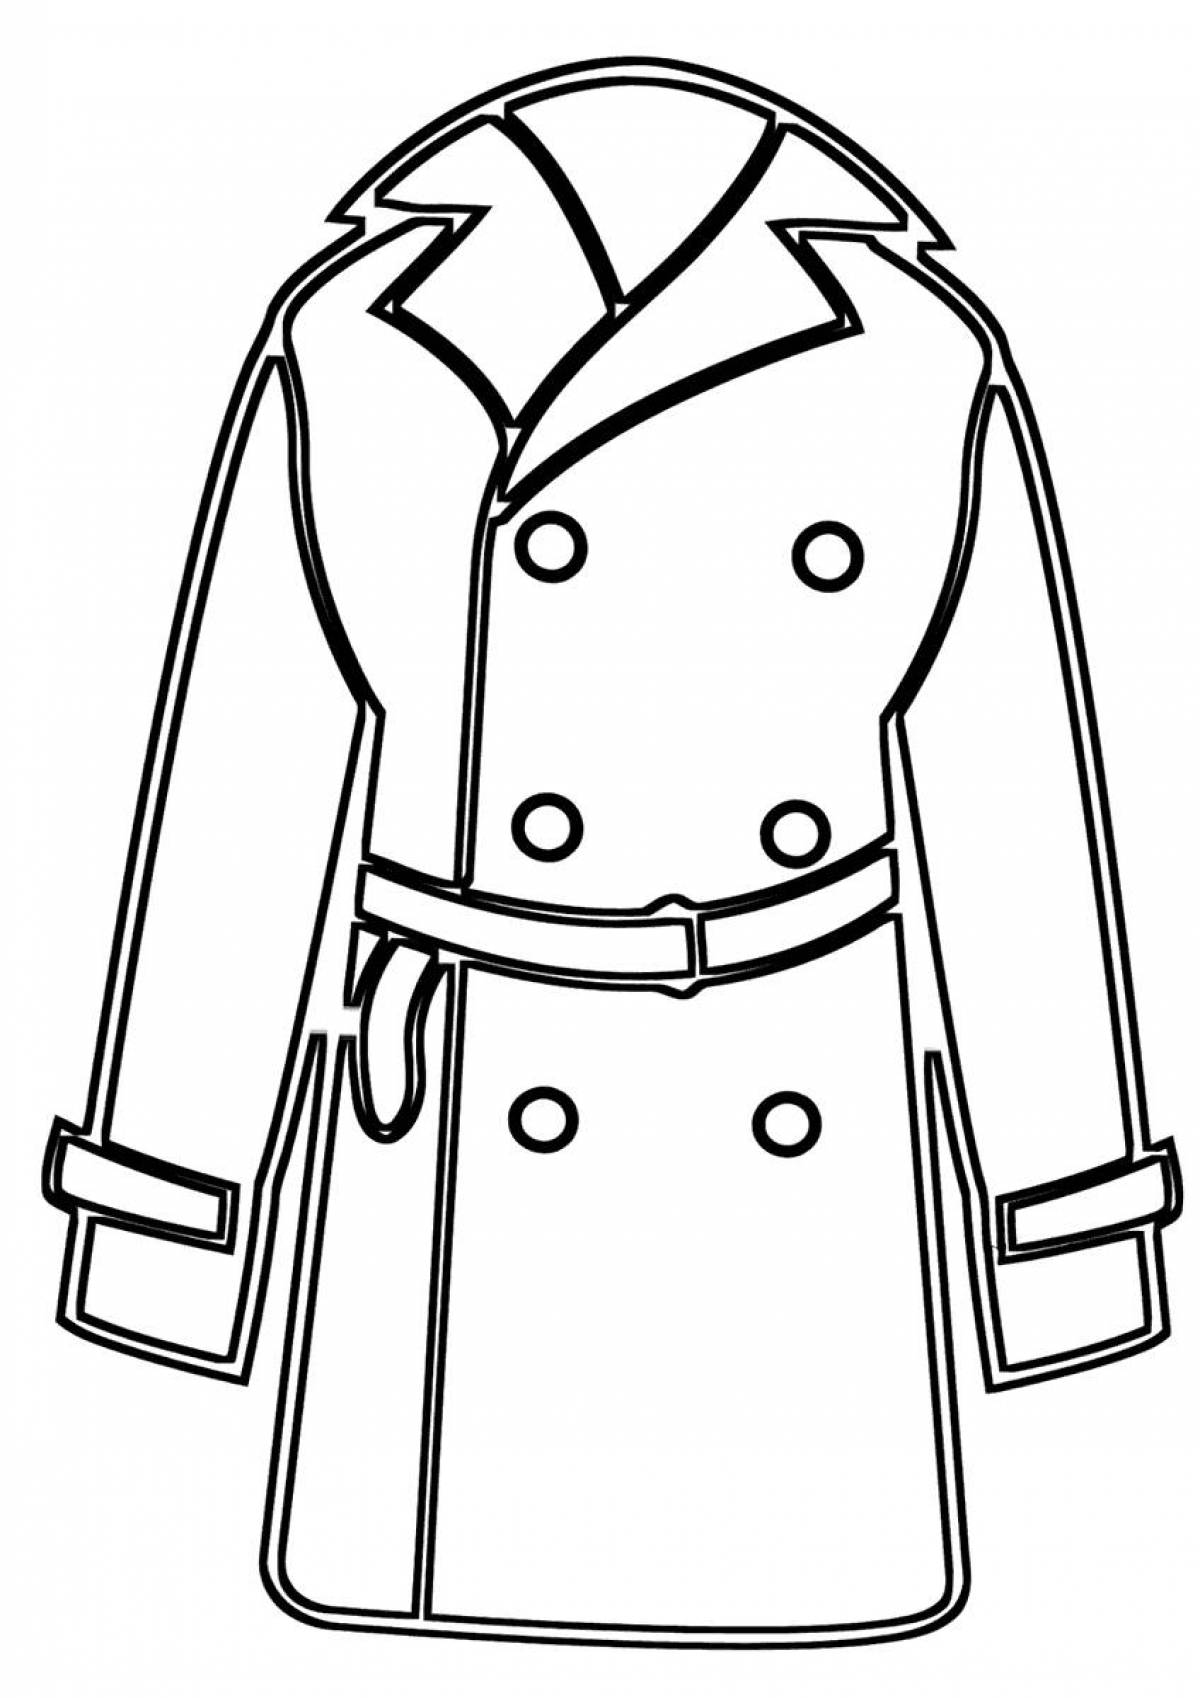 Coat pattern